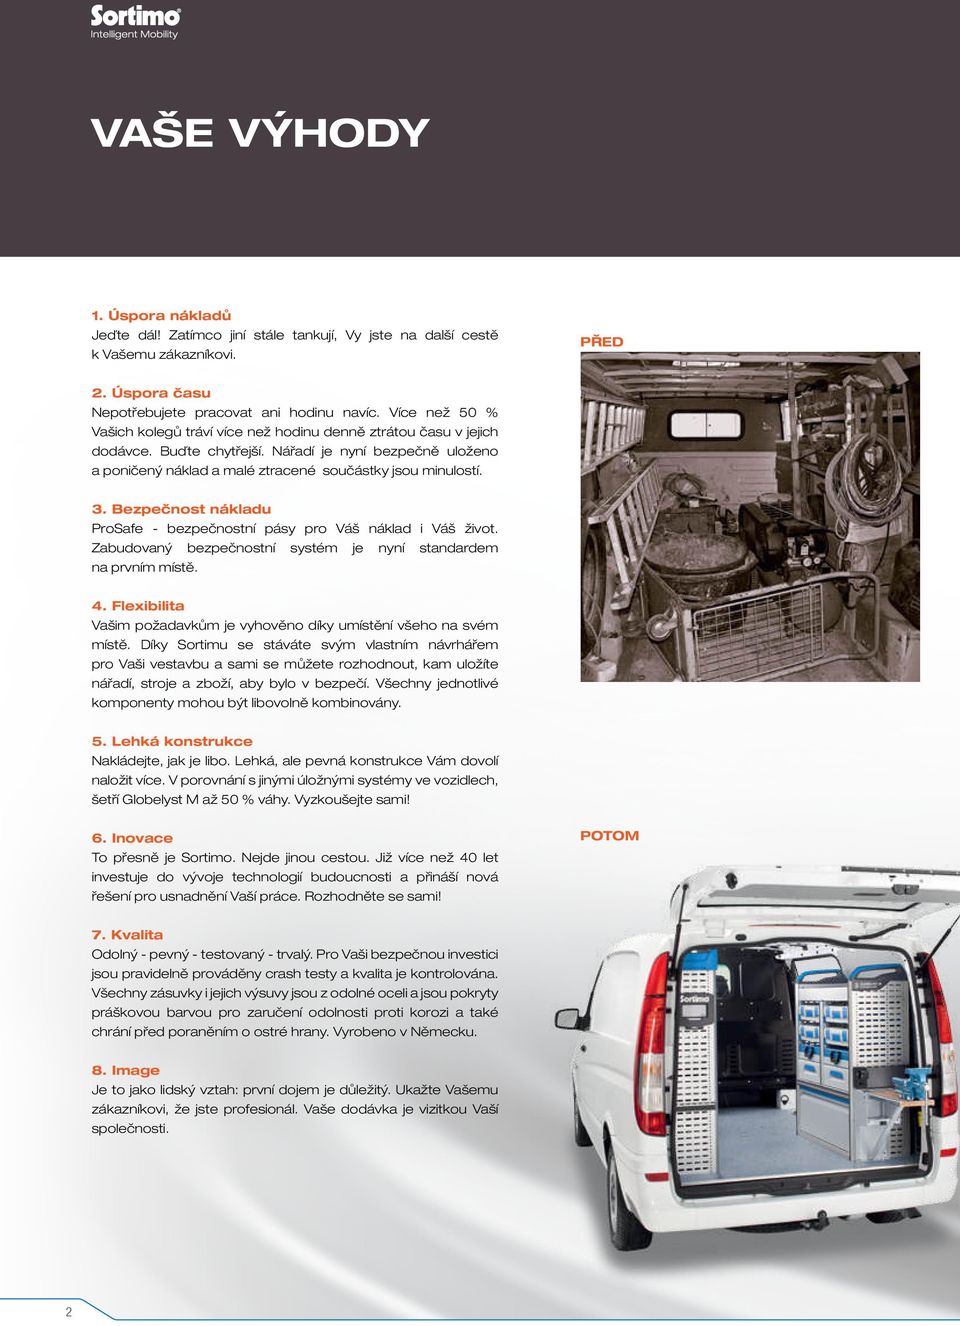 Bezpečnost nákladu ProSafe - bezpečnostní pásy pro Váš náklad i Váš život. Zabudovaný bezpečnostní systém je nyní standardem na prvním místě. 4.